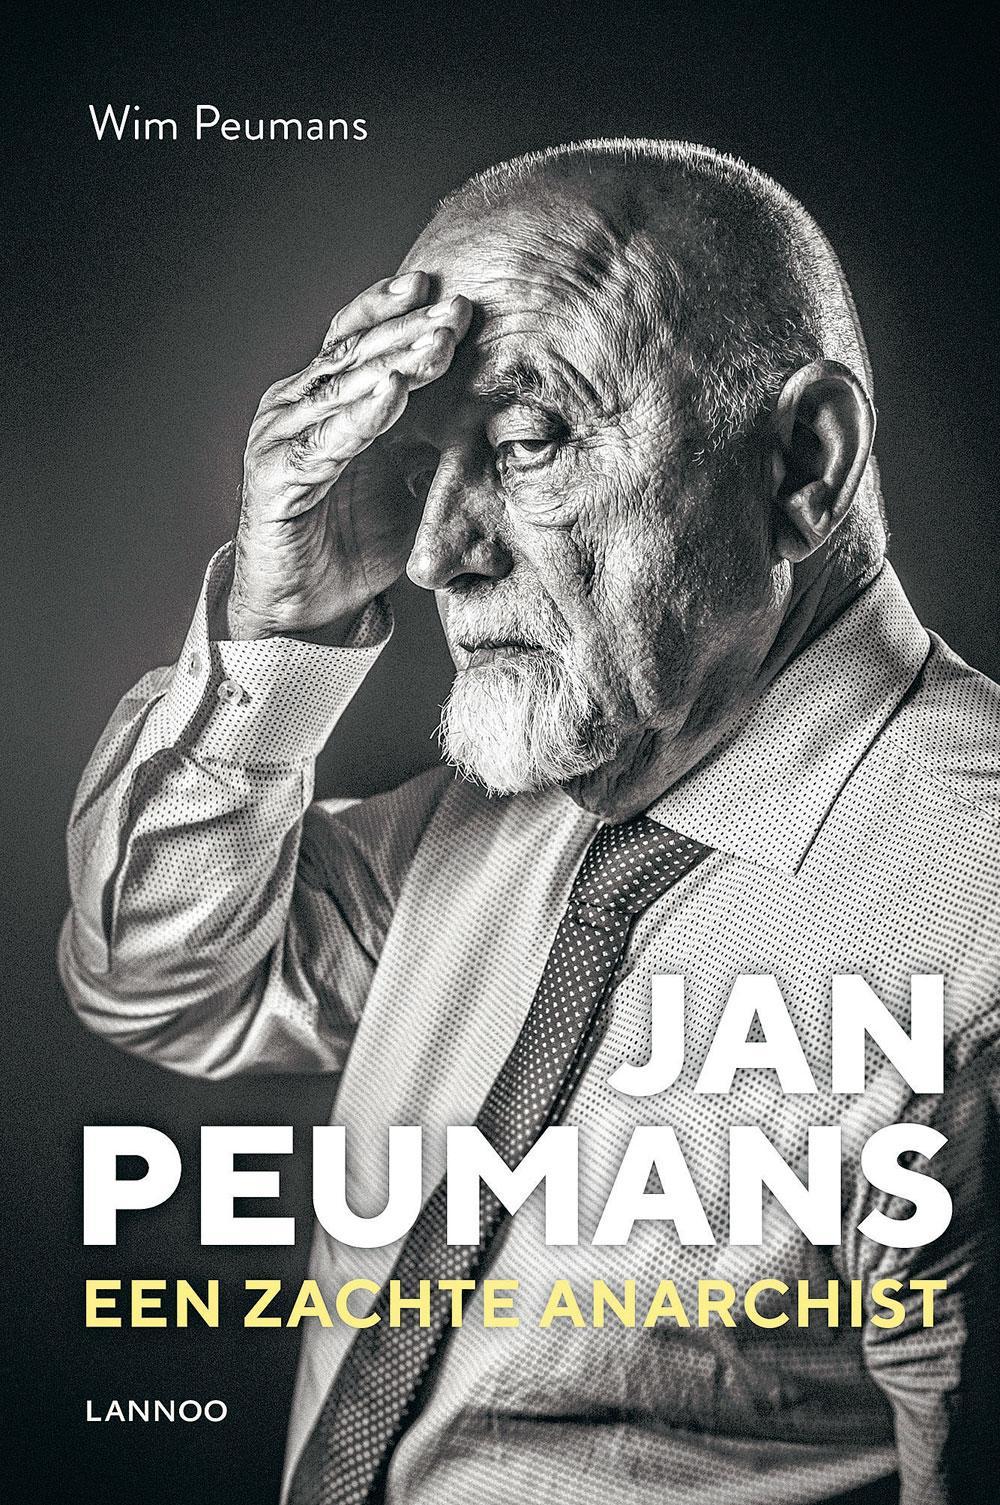 Wim Peumans, Jan Peumans, Een zachte anarchist, Uitgeverij Lannoo, 304 pagina's, 24,99 euro.